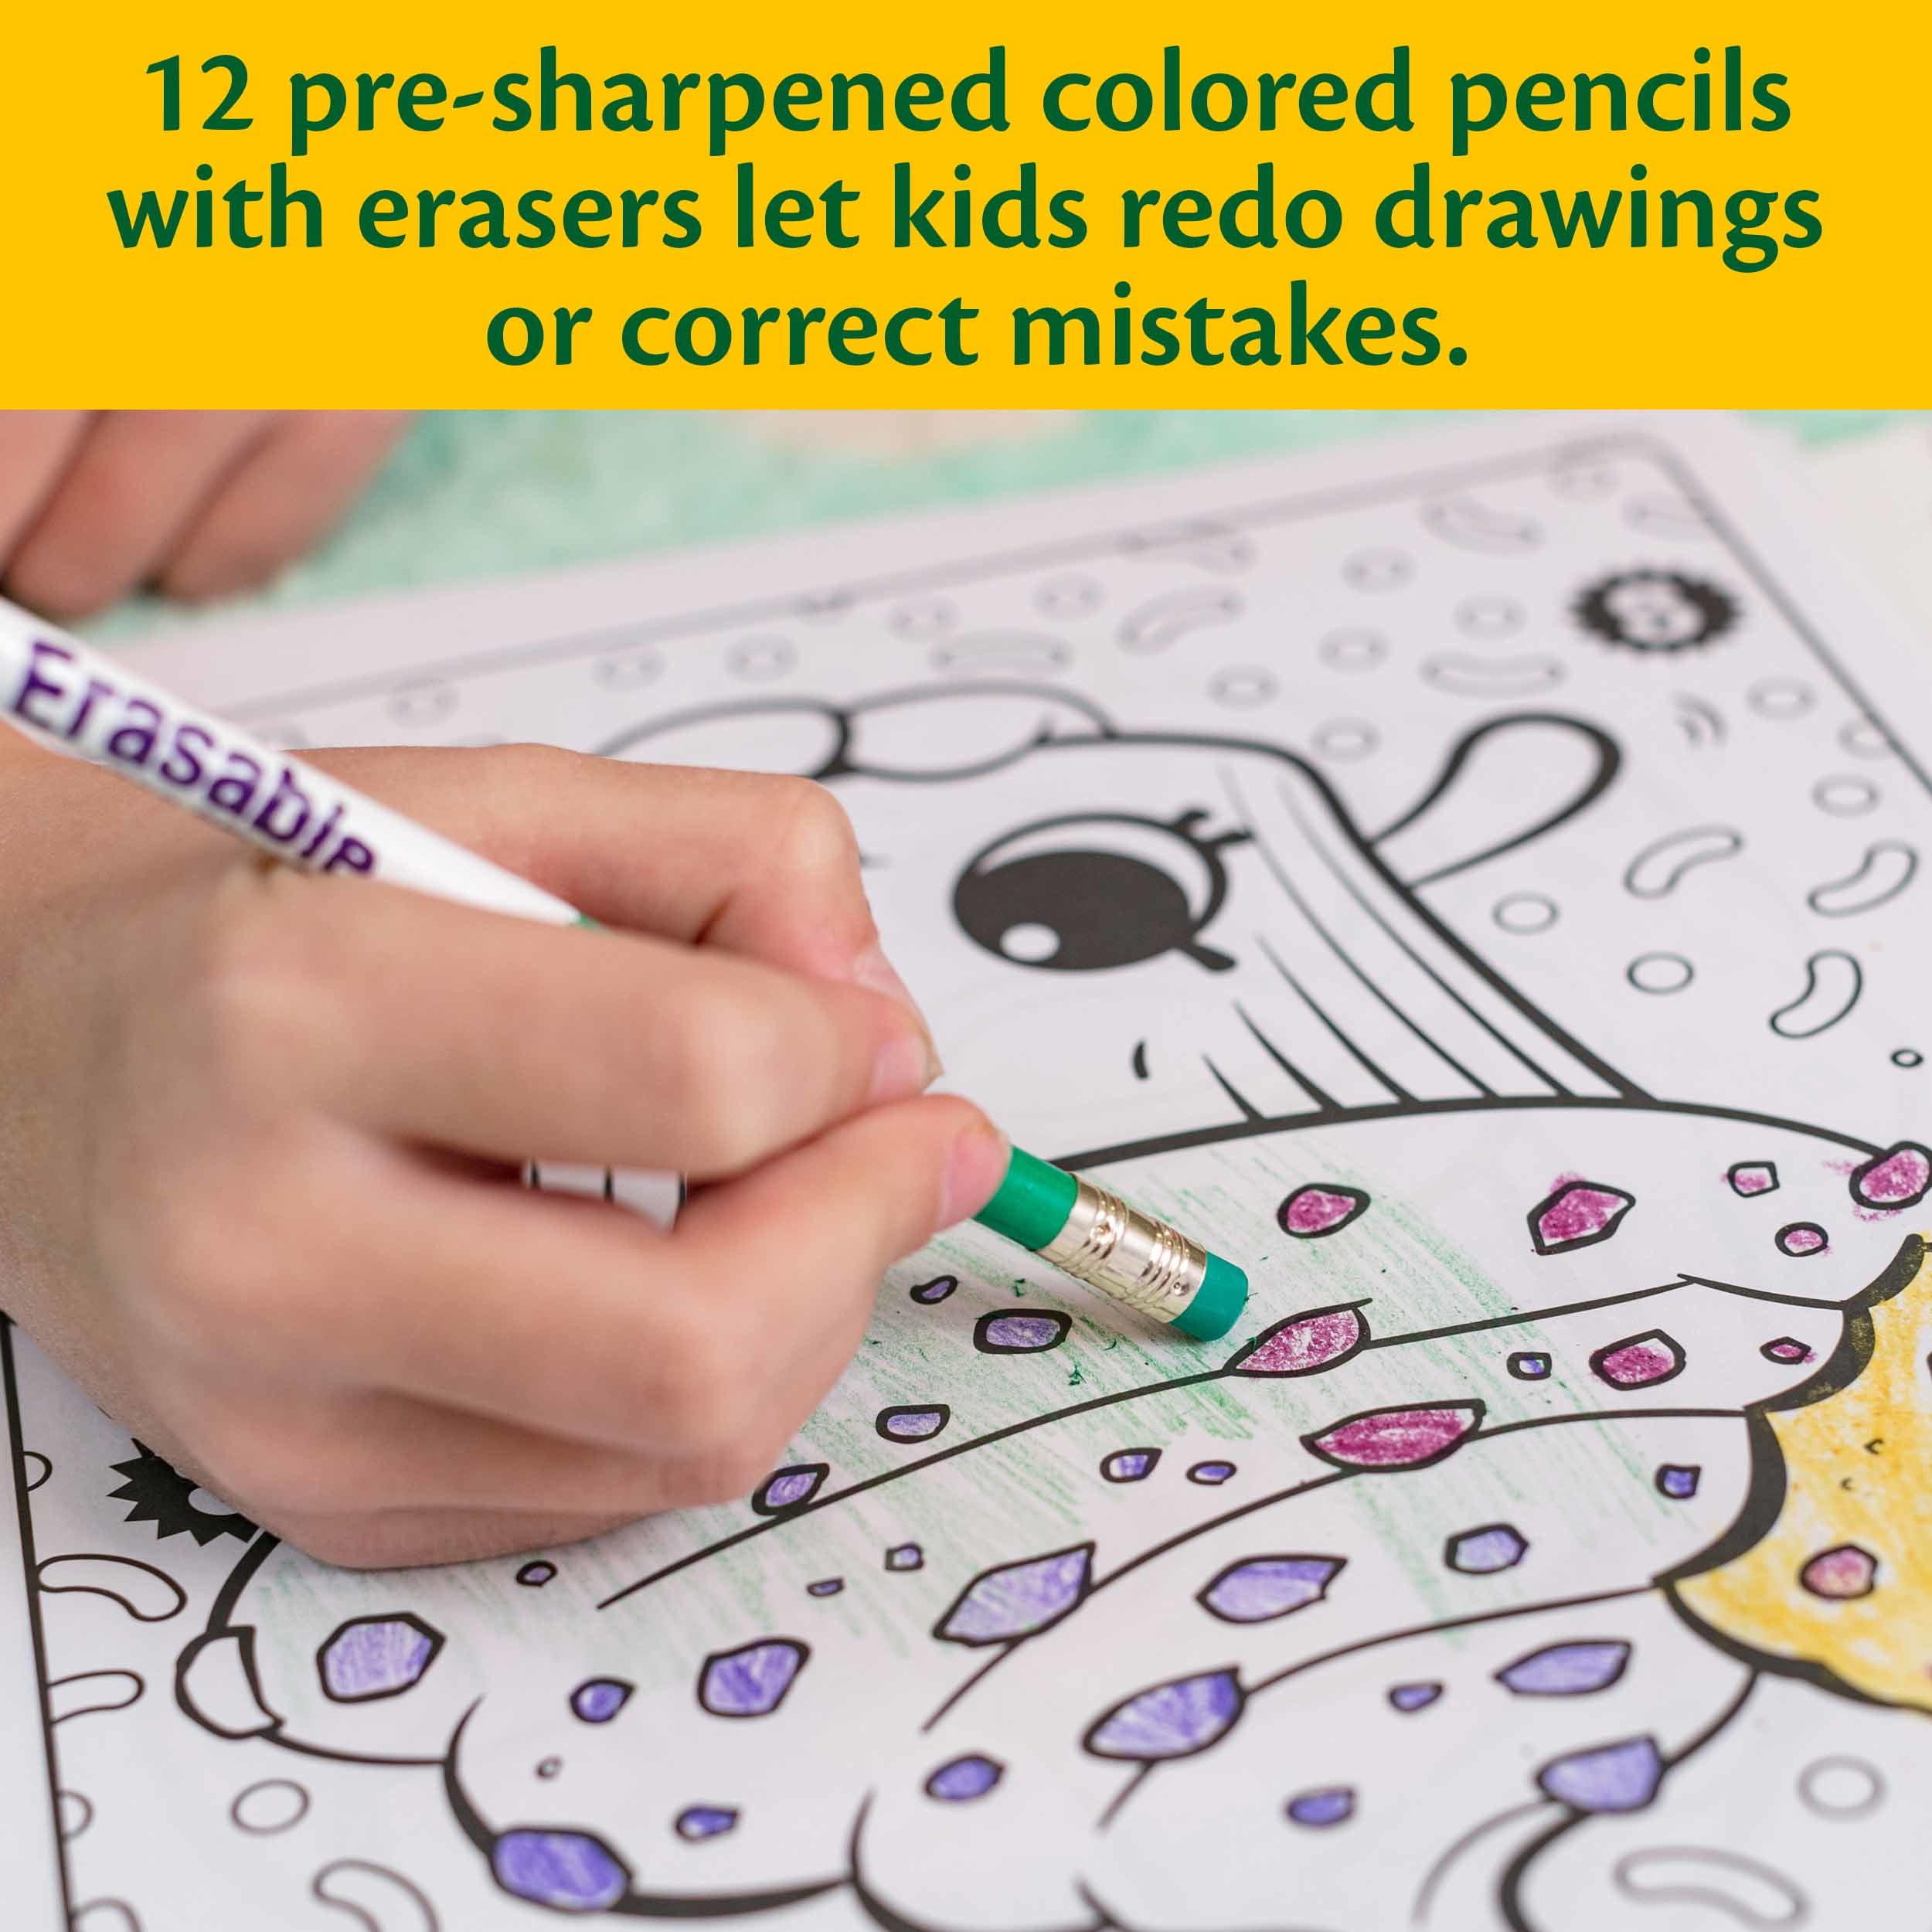 Crayola 30364620 24 Erasable Colored Pencils